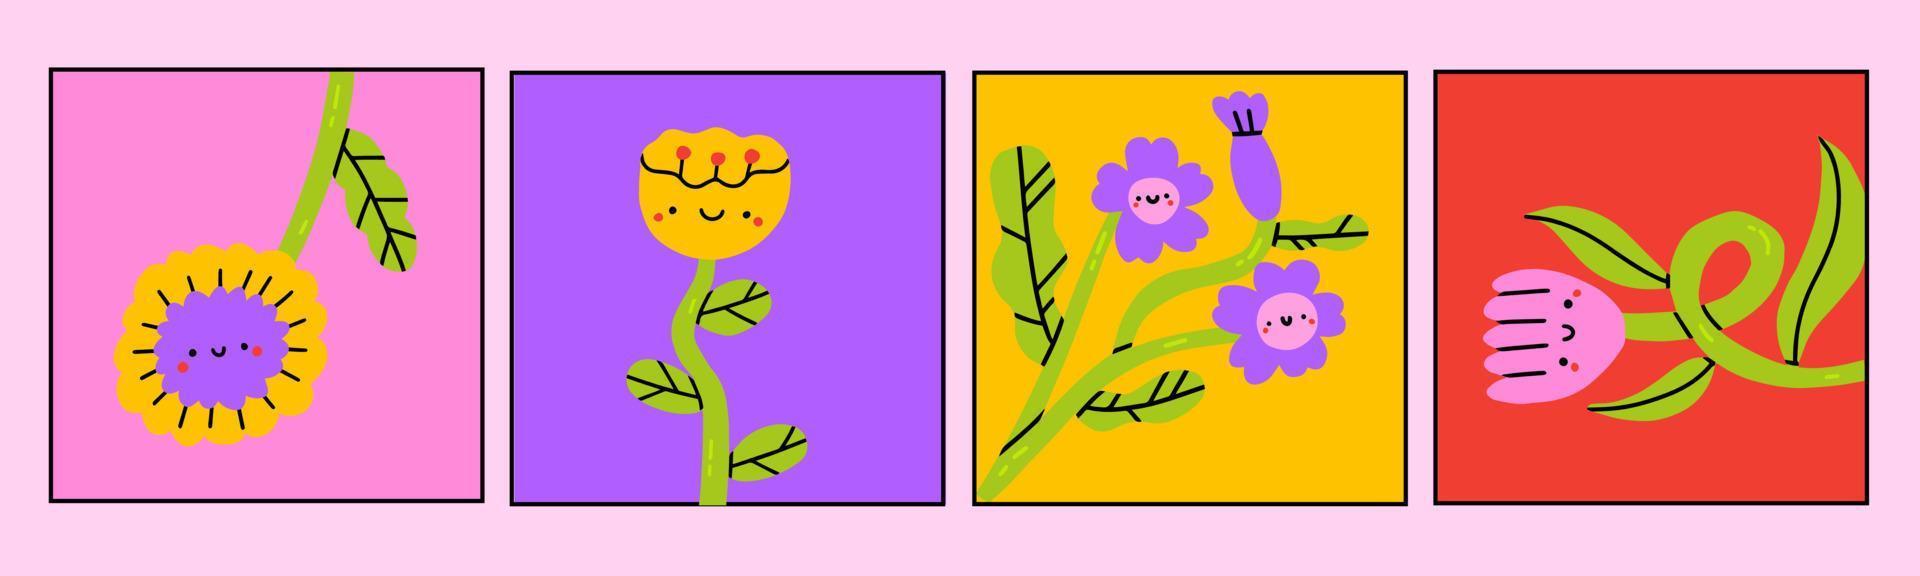 resumen sencillo plantas y flores con ojos. mano dibujado de colores vector colocar. floral diseño, ingenuo arte, infantil estilo Arte. vistoso de moda ilustración. prefabricado tarjetas o huellas dactilares